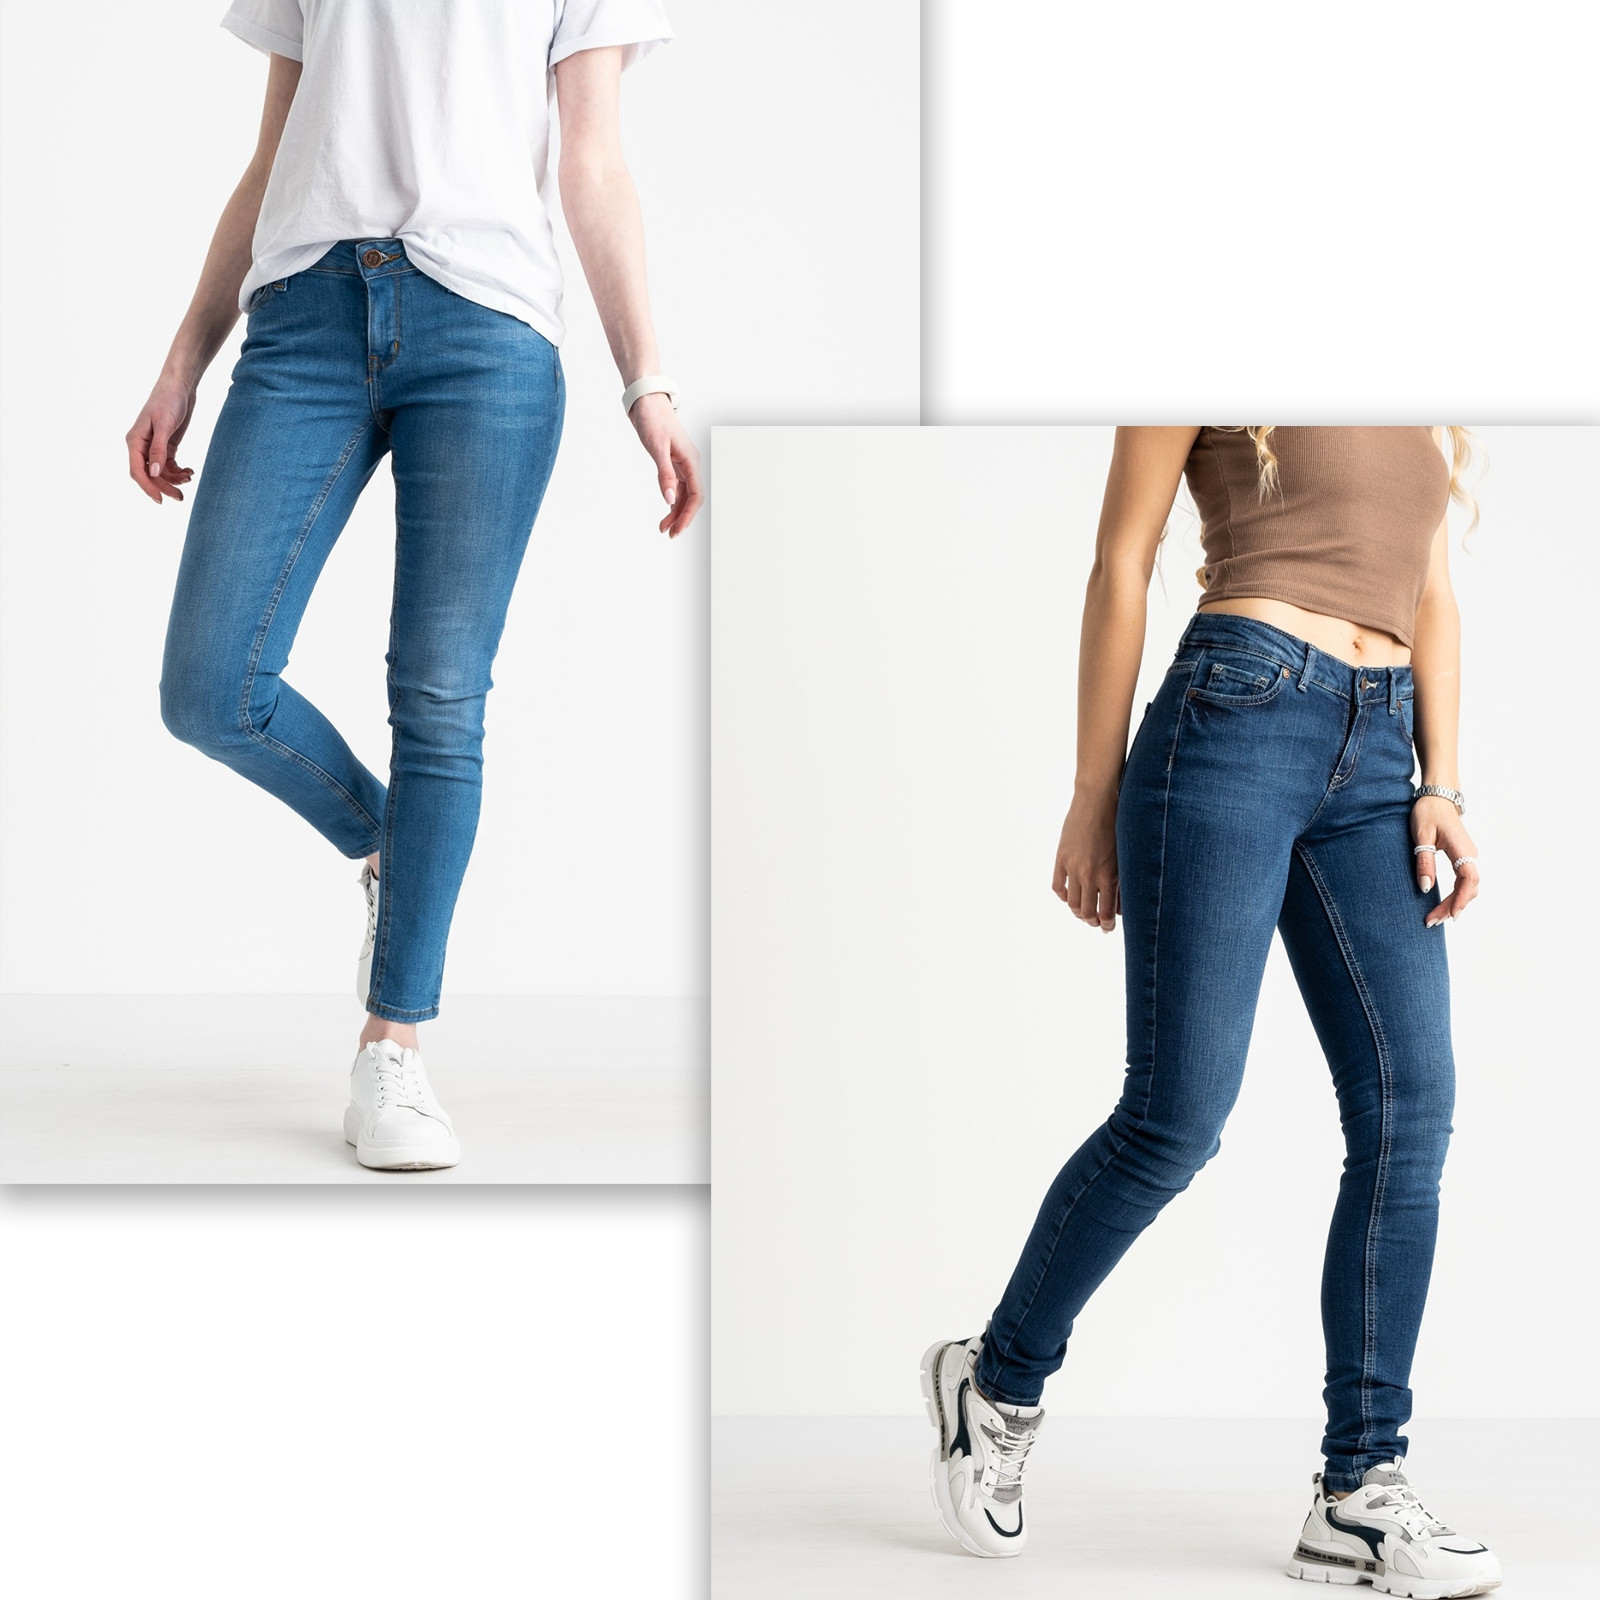 1977 Nescoly джинсы женские микс 2-х моделей стрейчевые (8 ед. размеры: 25.26.28/3.29.30/2)